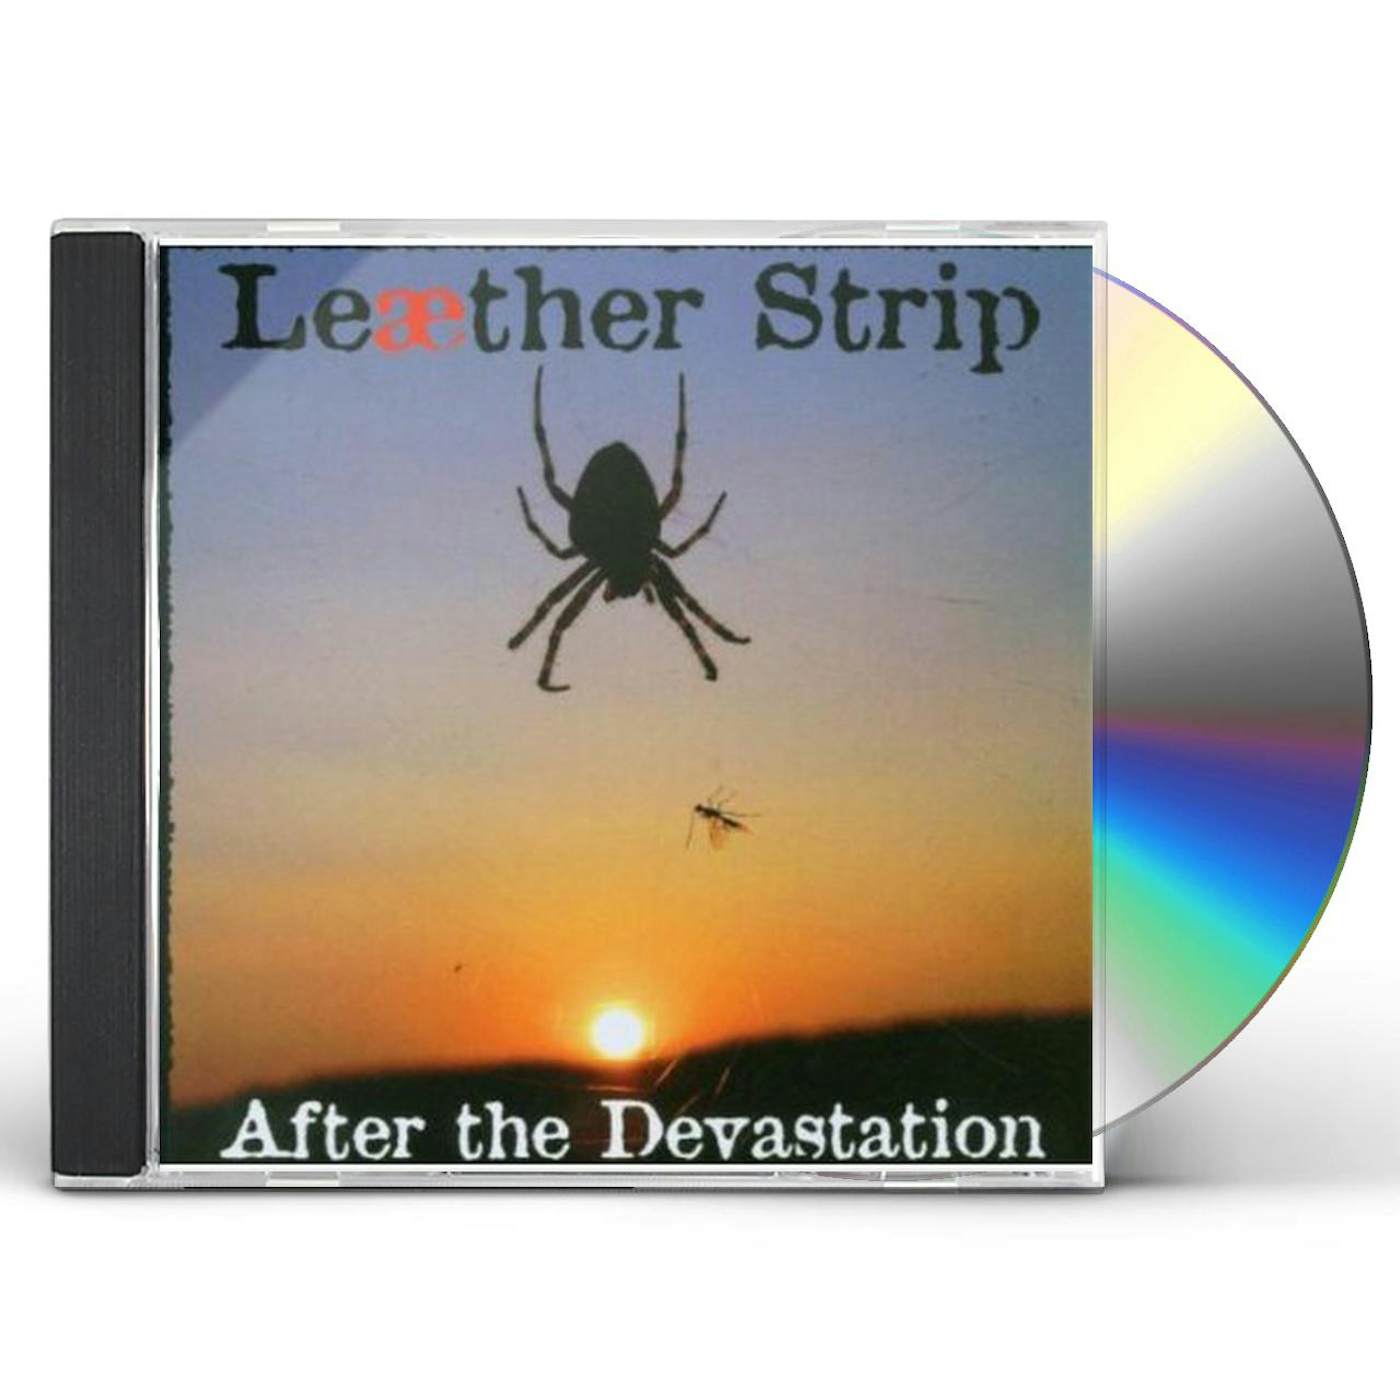 Leaether Strip AFTER THE DEVASTATION CD